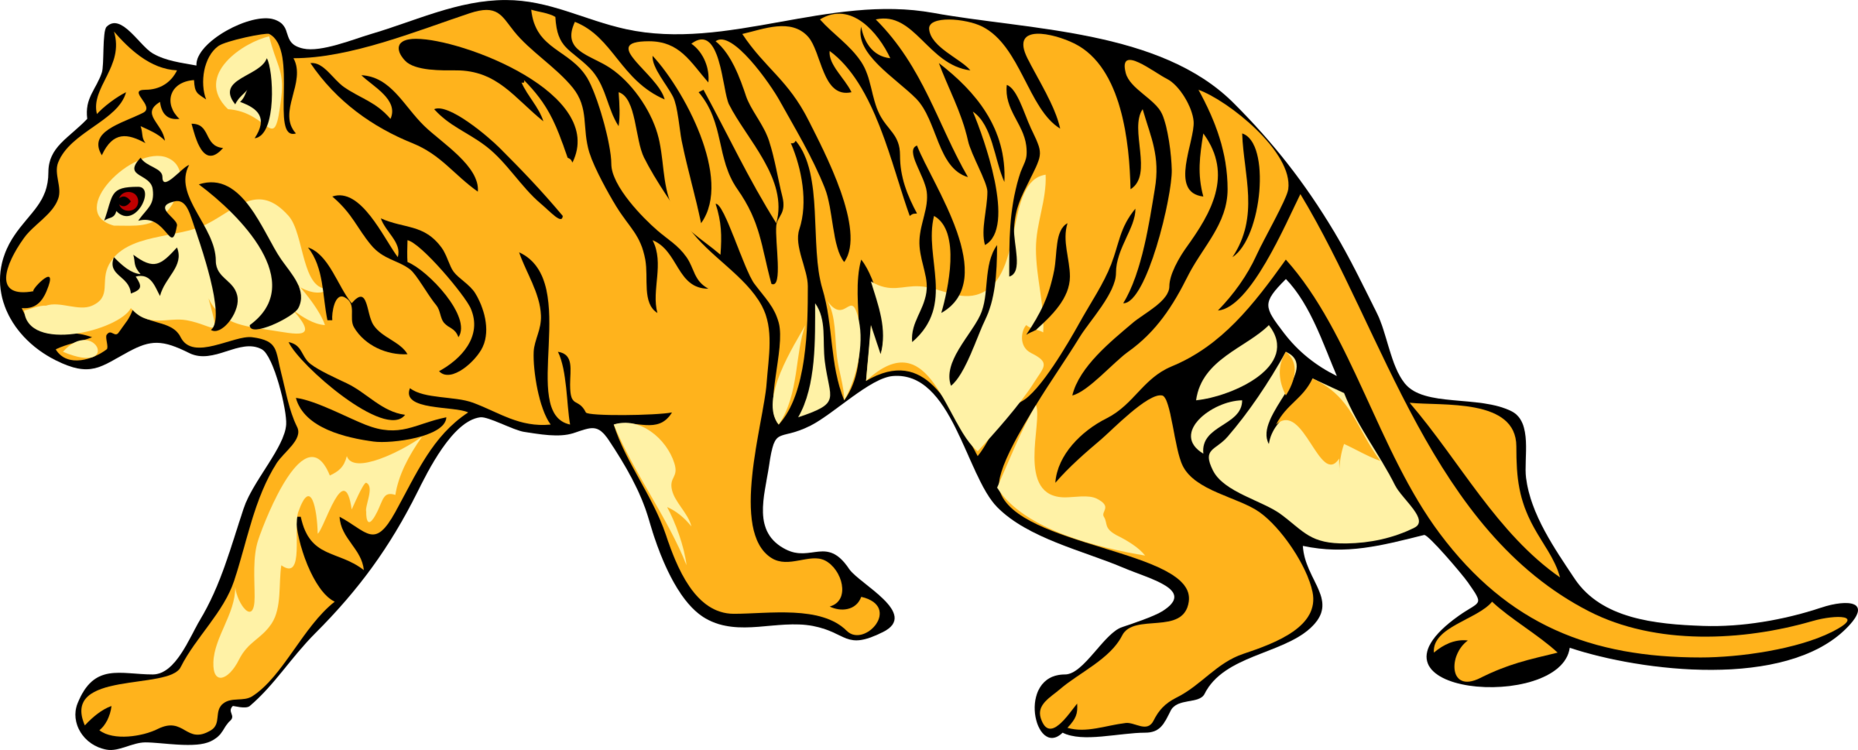 Yellow Tiger Walking PNG Image - PurePNG